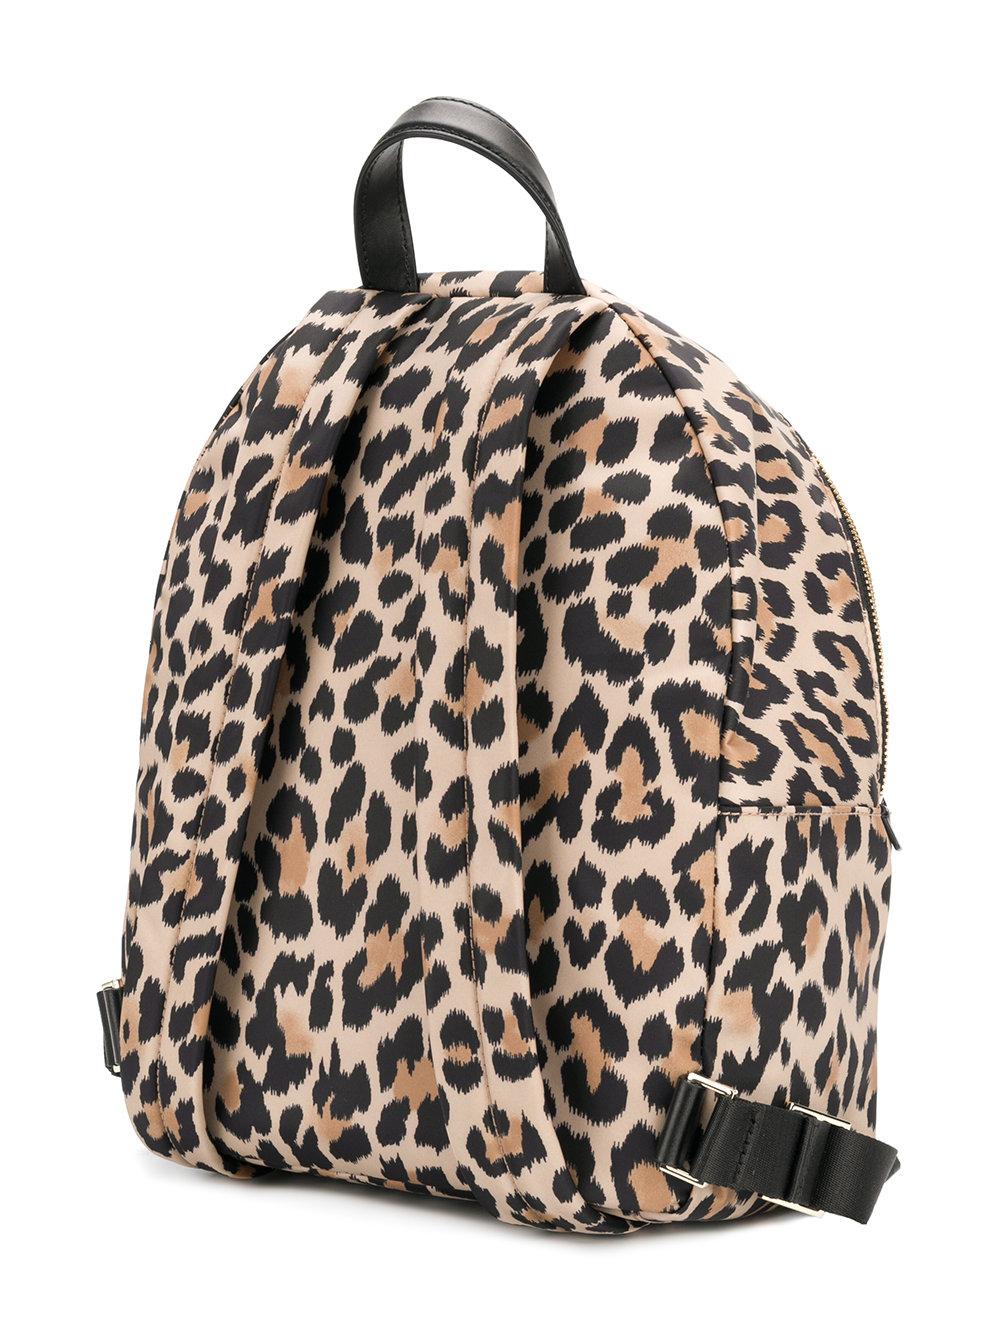 Lyst - Kate Spade Leopard Print Backpack in Brown